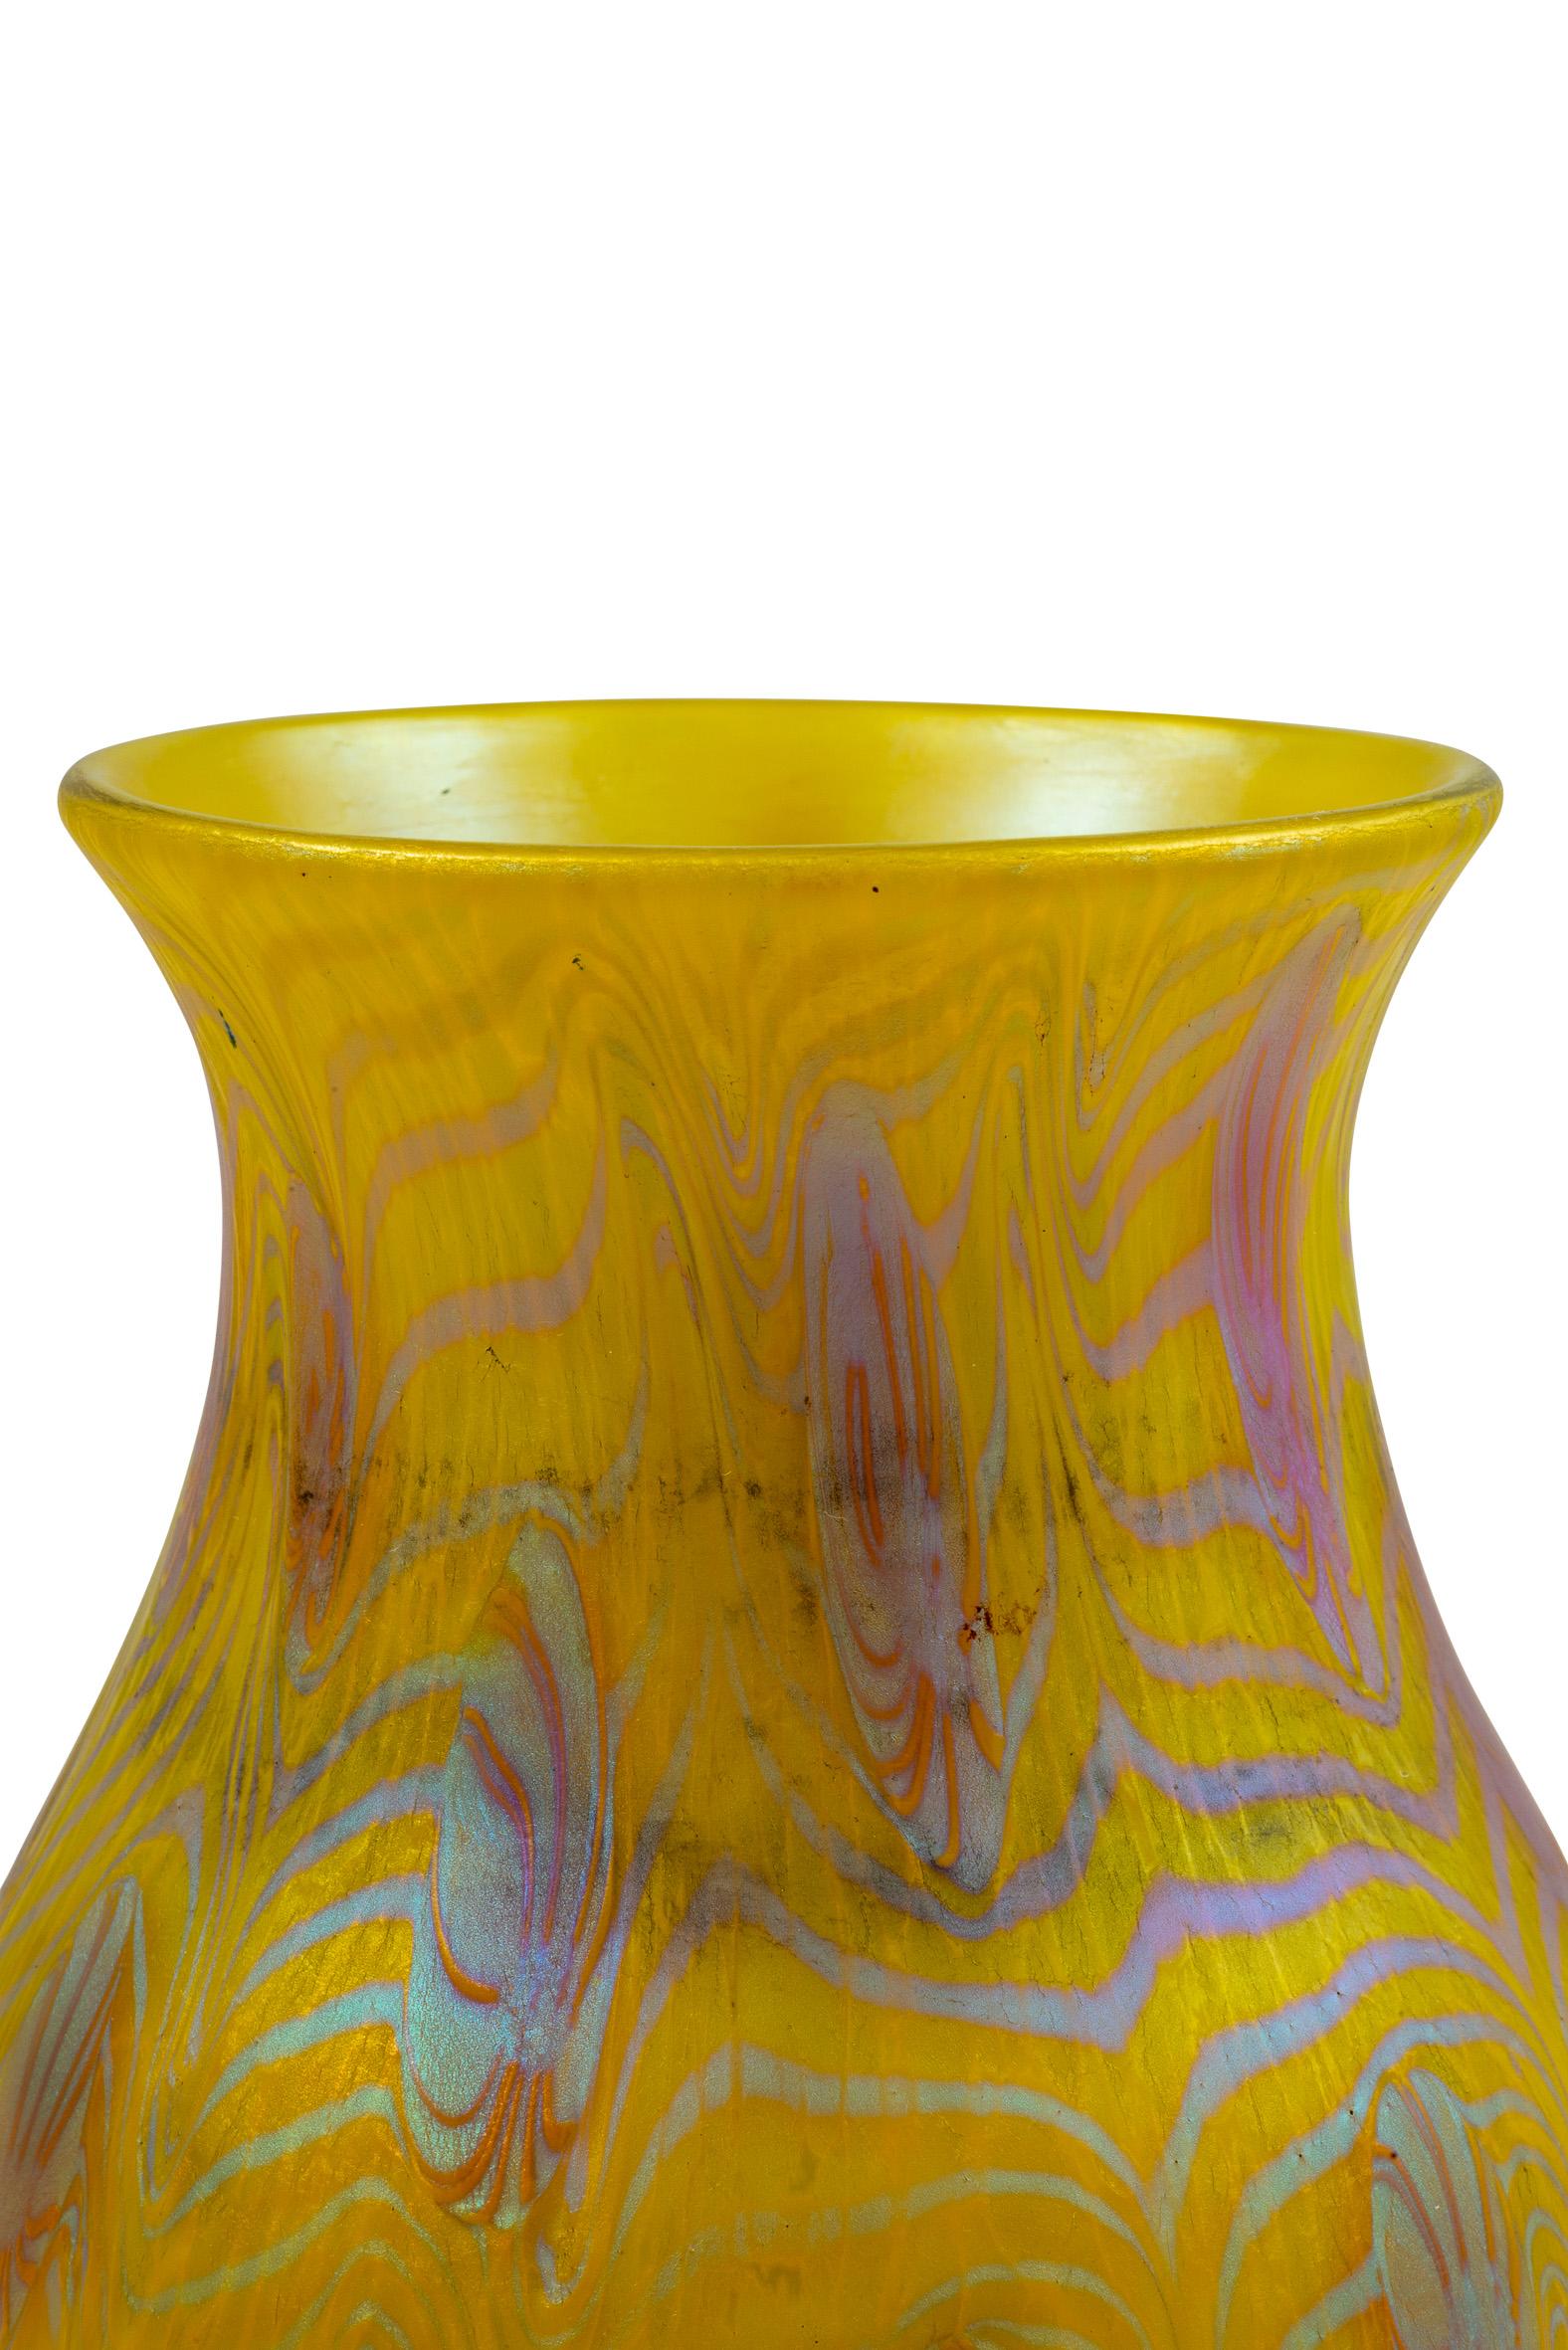 Austrian Jugendstil Glass Vase Yellow Iridescent circa 1903 Loetz In Good Condition For Sale In Klosterneuburg, AT